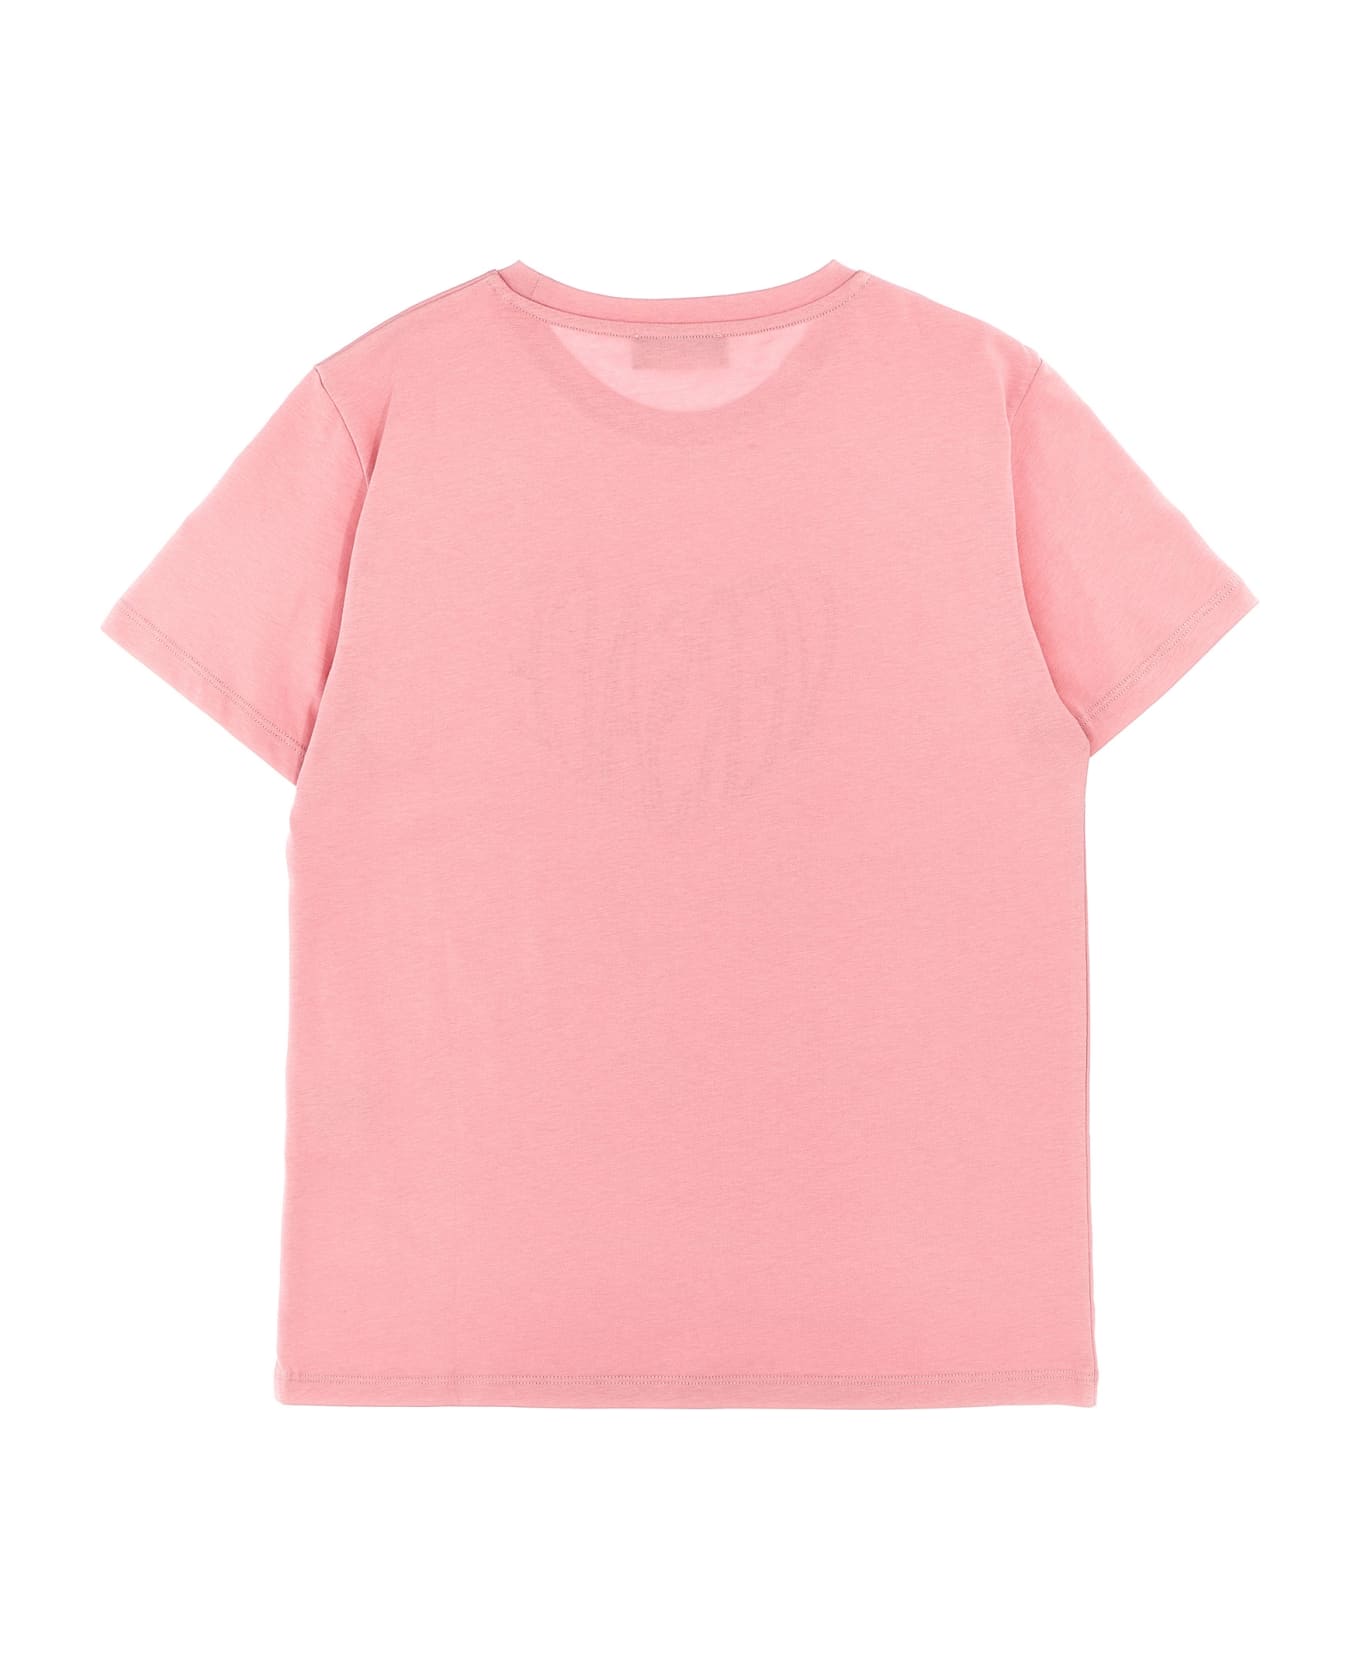 Versace Rhinestone Logo T-shirt - Pink